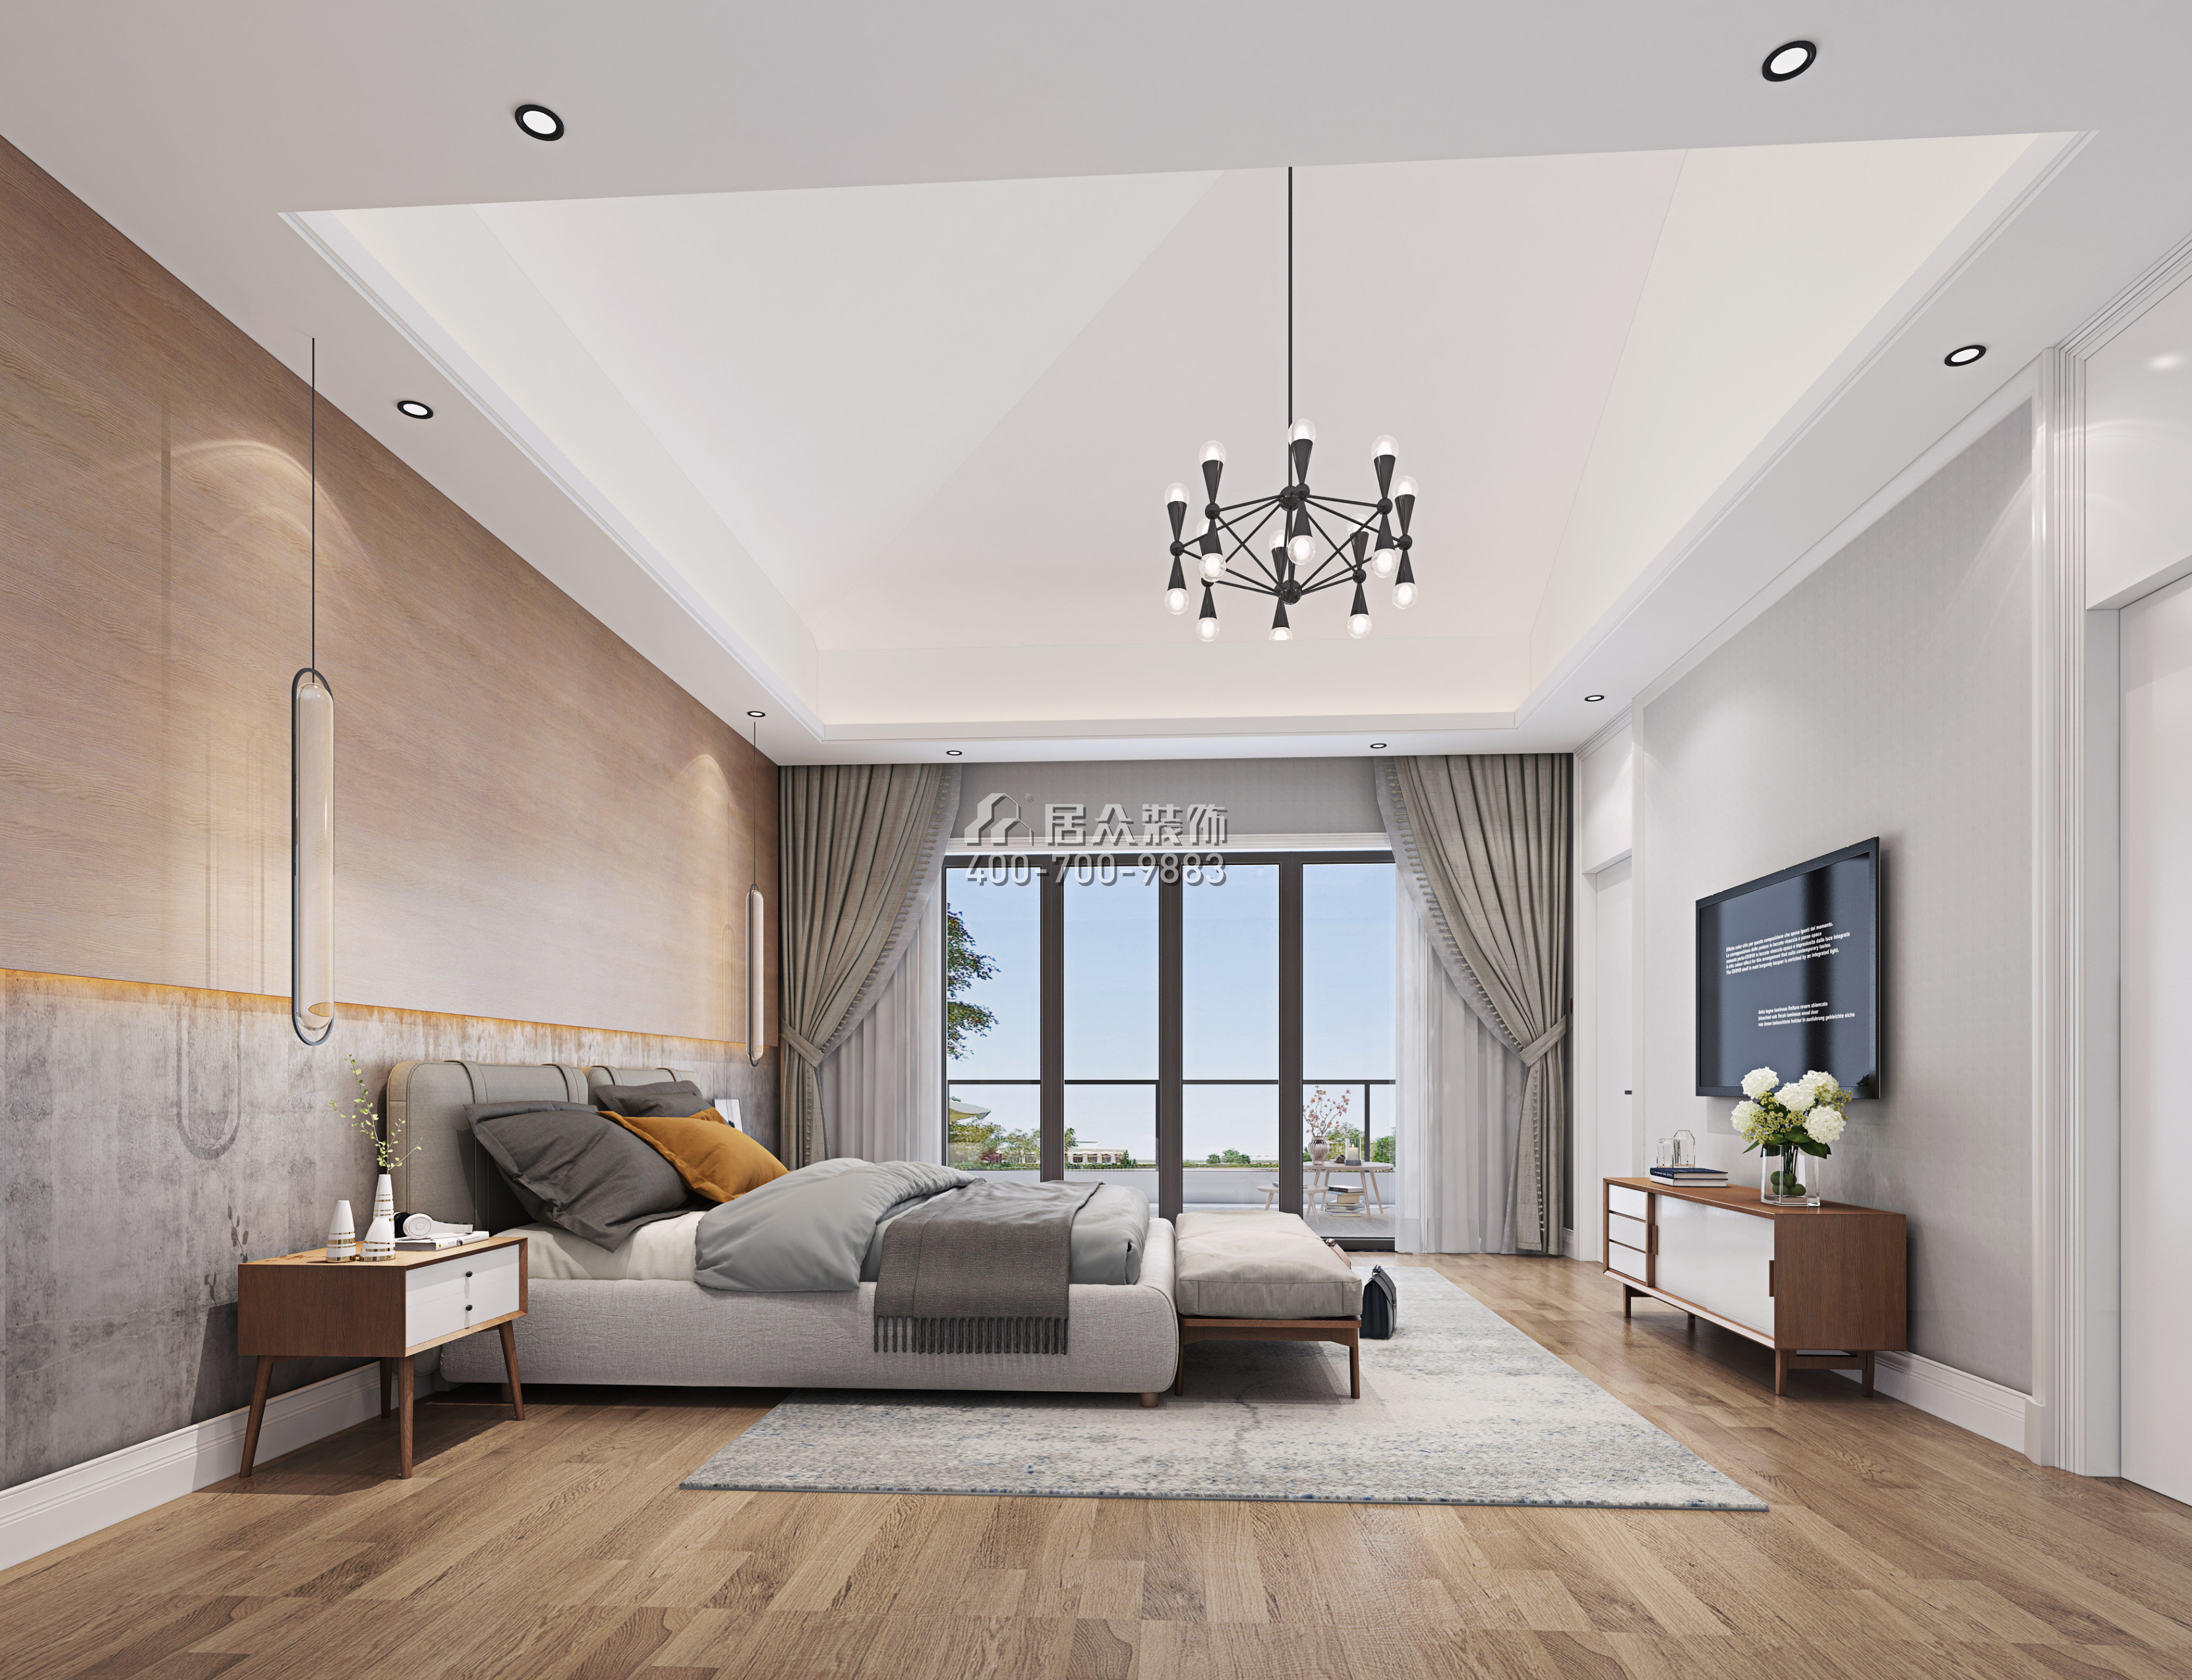 海逸豪庭267平方米现代简约风格别墅户型卧室装修效果图